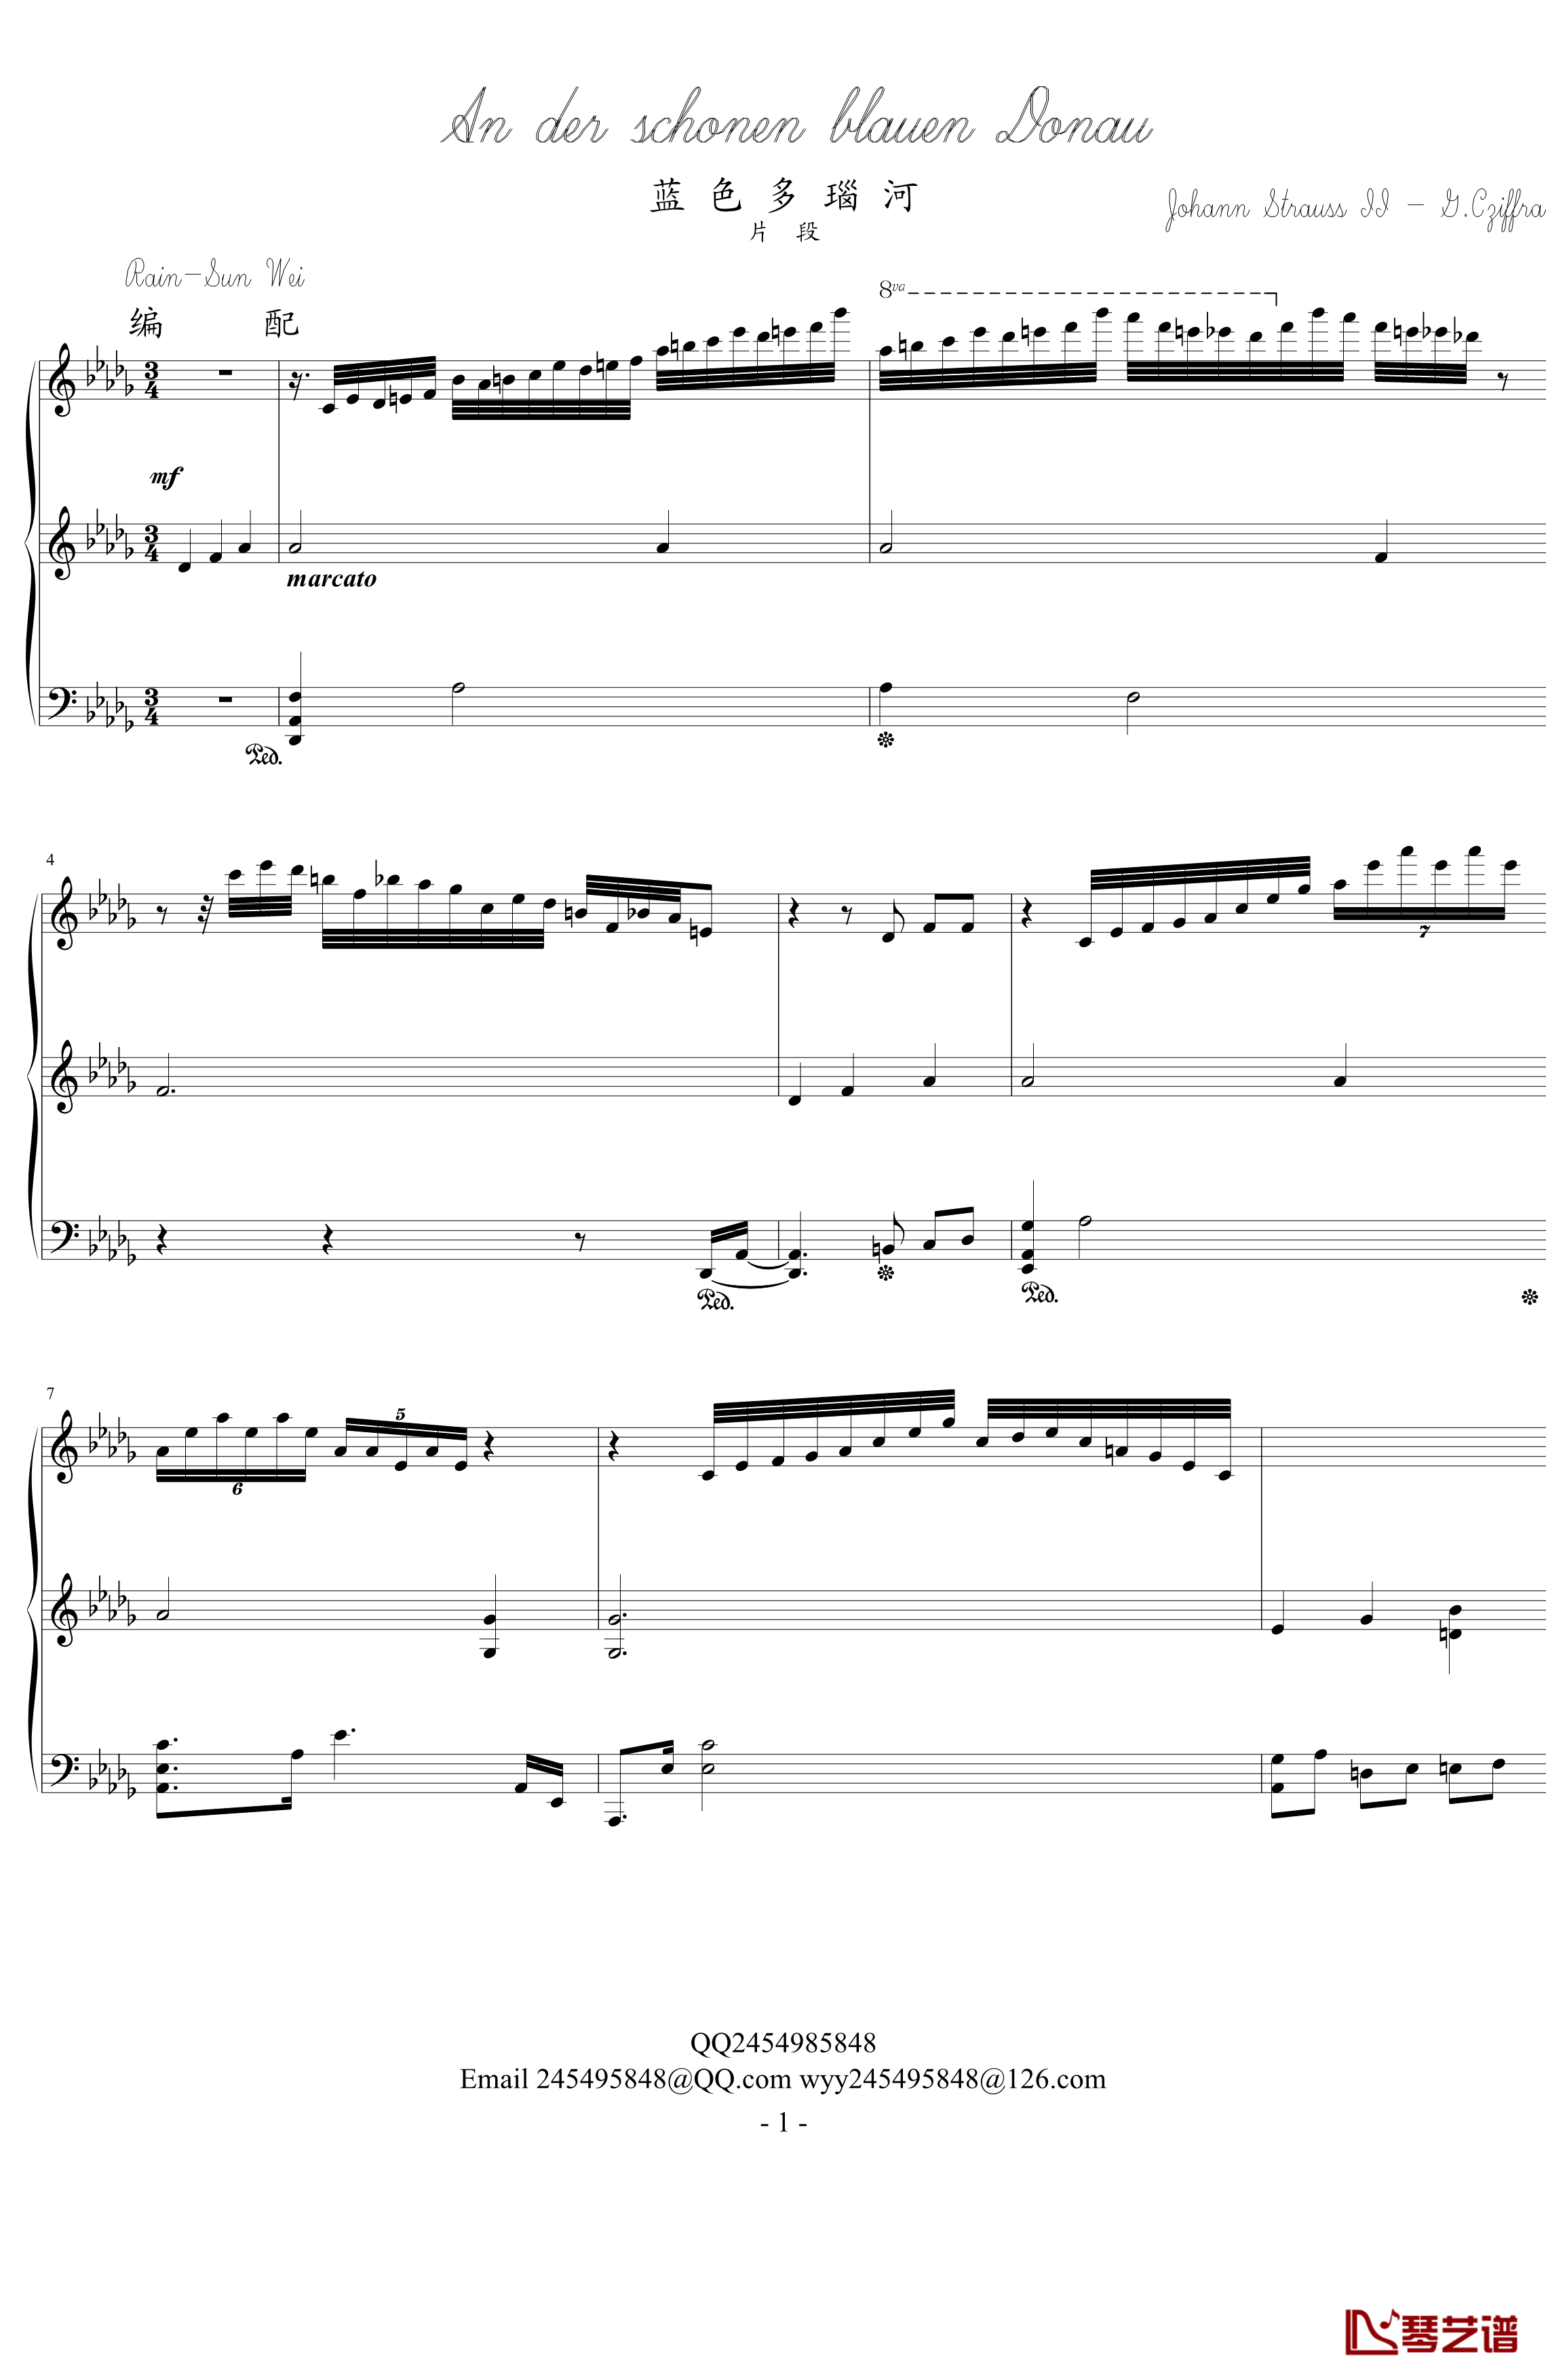 蓝色多瑙河钢琴谱-变态版-施特劳斯-Johann Strauss1